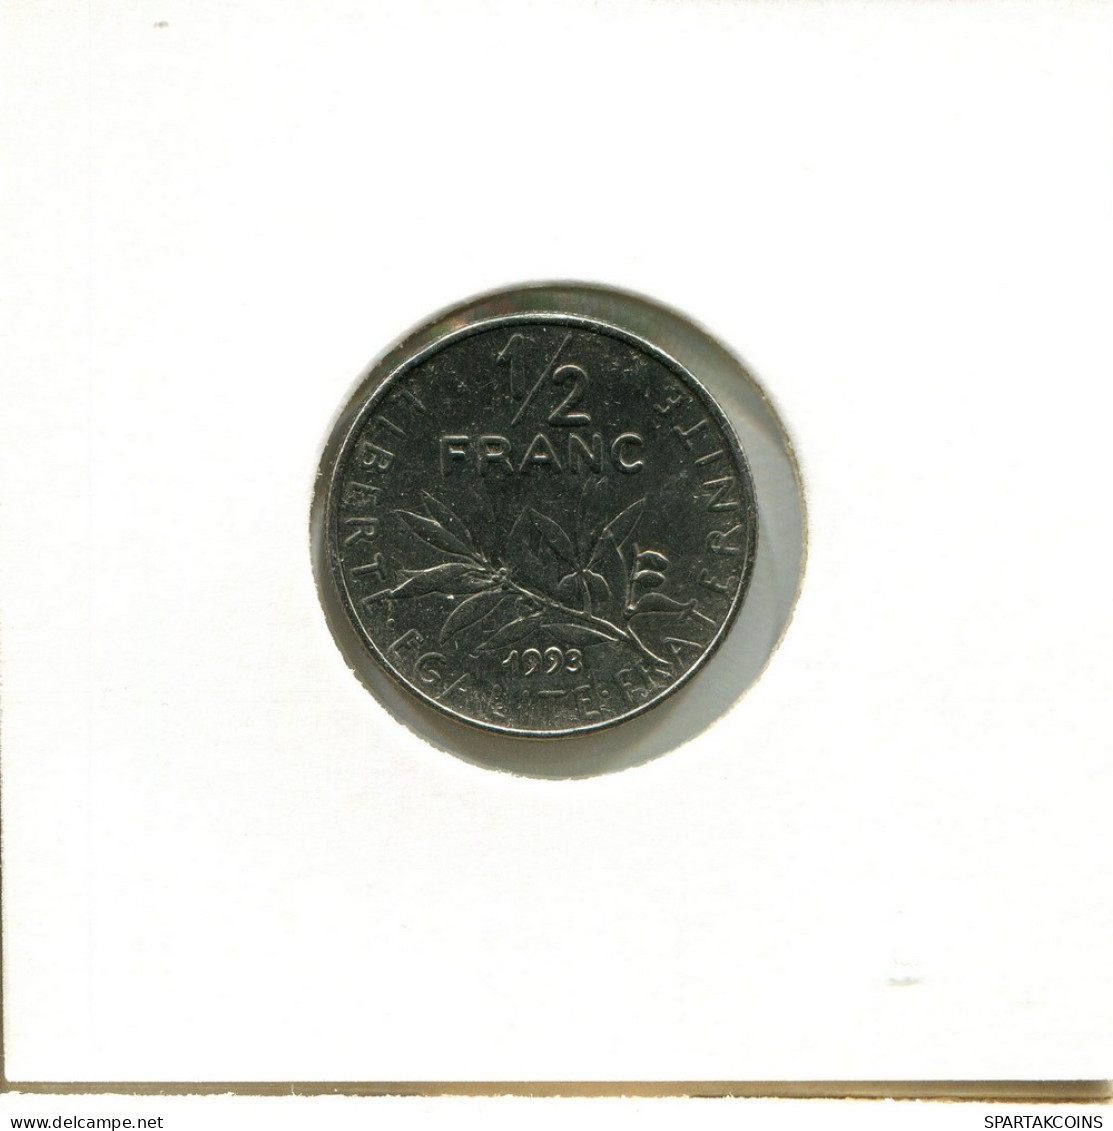 1/2 FRANC 1993 FRANCIA FRANCE Moneda #BB538.E.A - 1/2 Franc